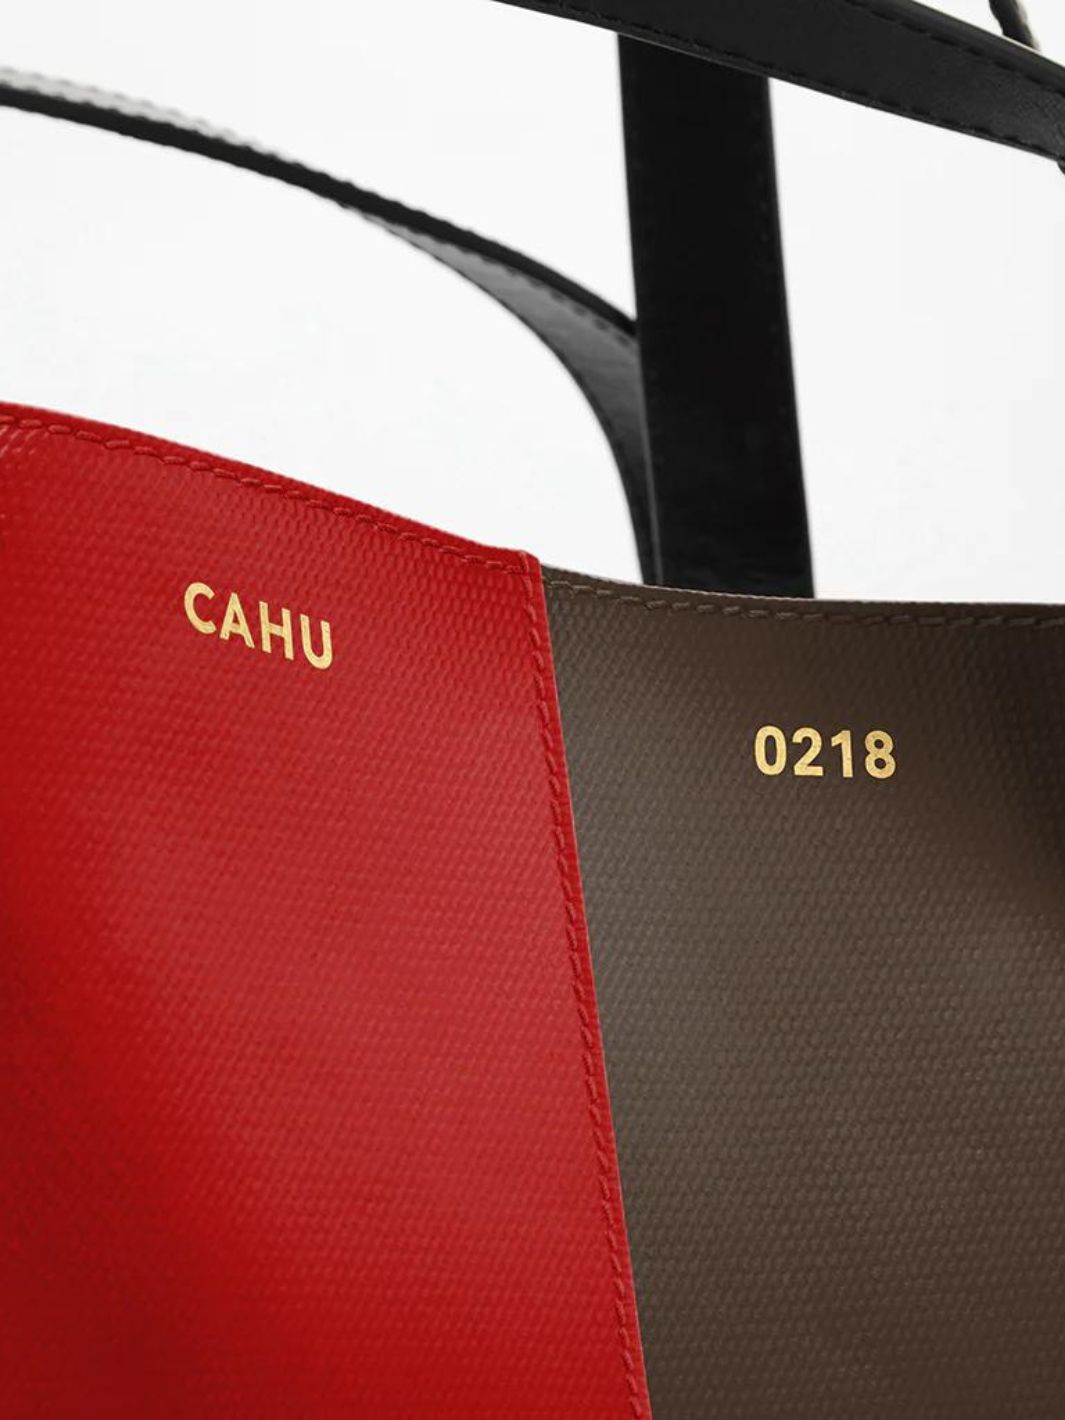 Cahu Bags Tote Bag | Pratique Medium Military Red/Brown